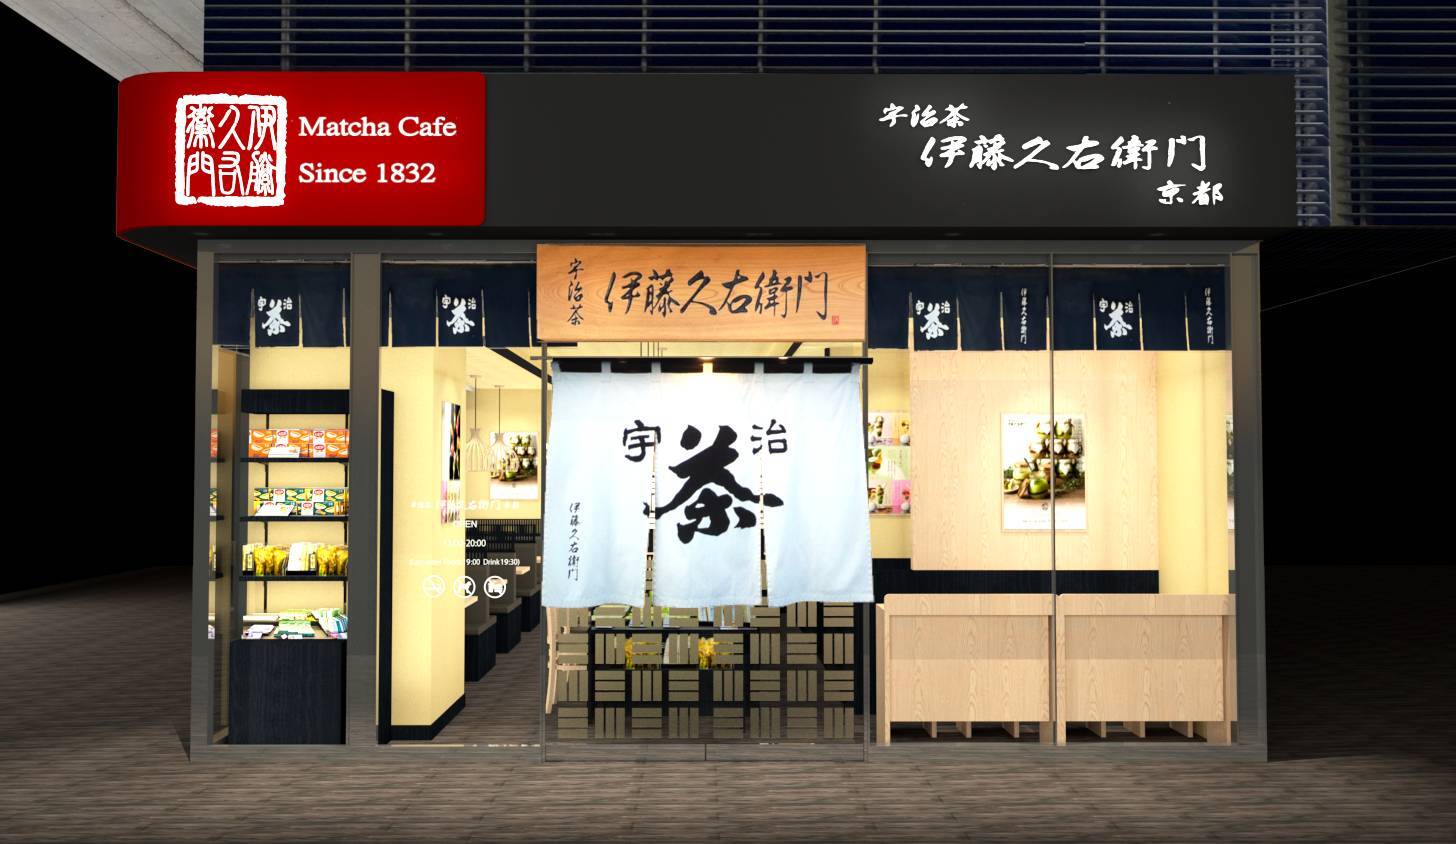 松本まりかさんが「千葉のさつまいもアンバサダー」に就任！
千葉県ならではのさつまいもの美味しさを伝えていきます